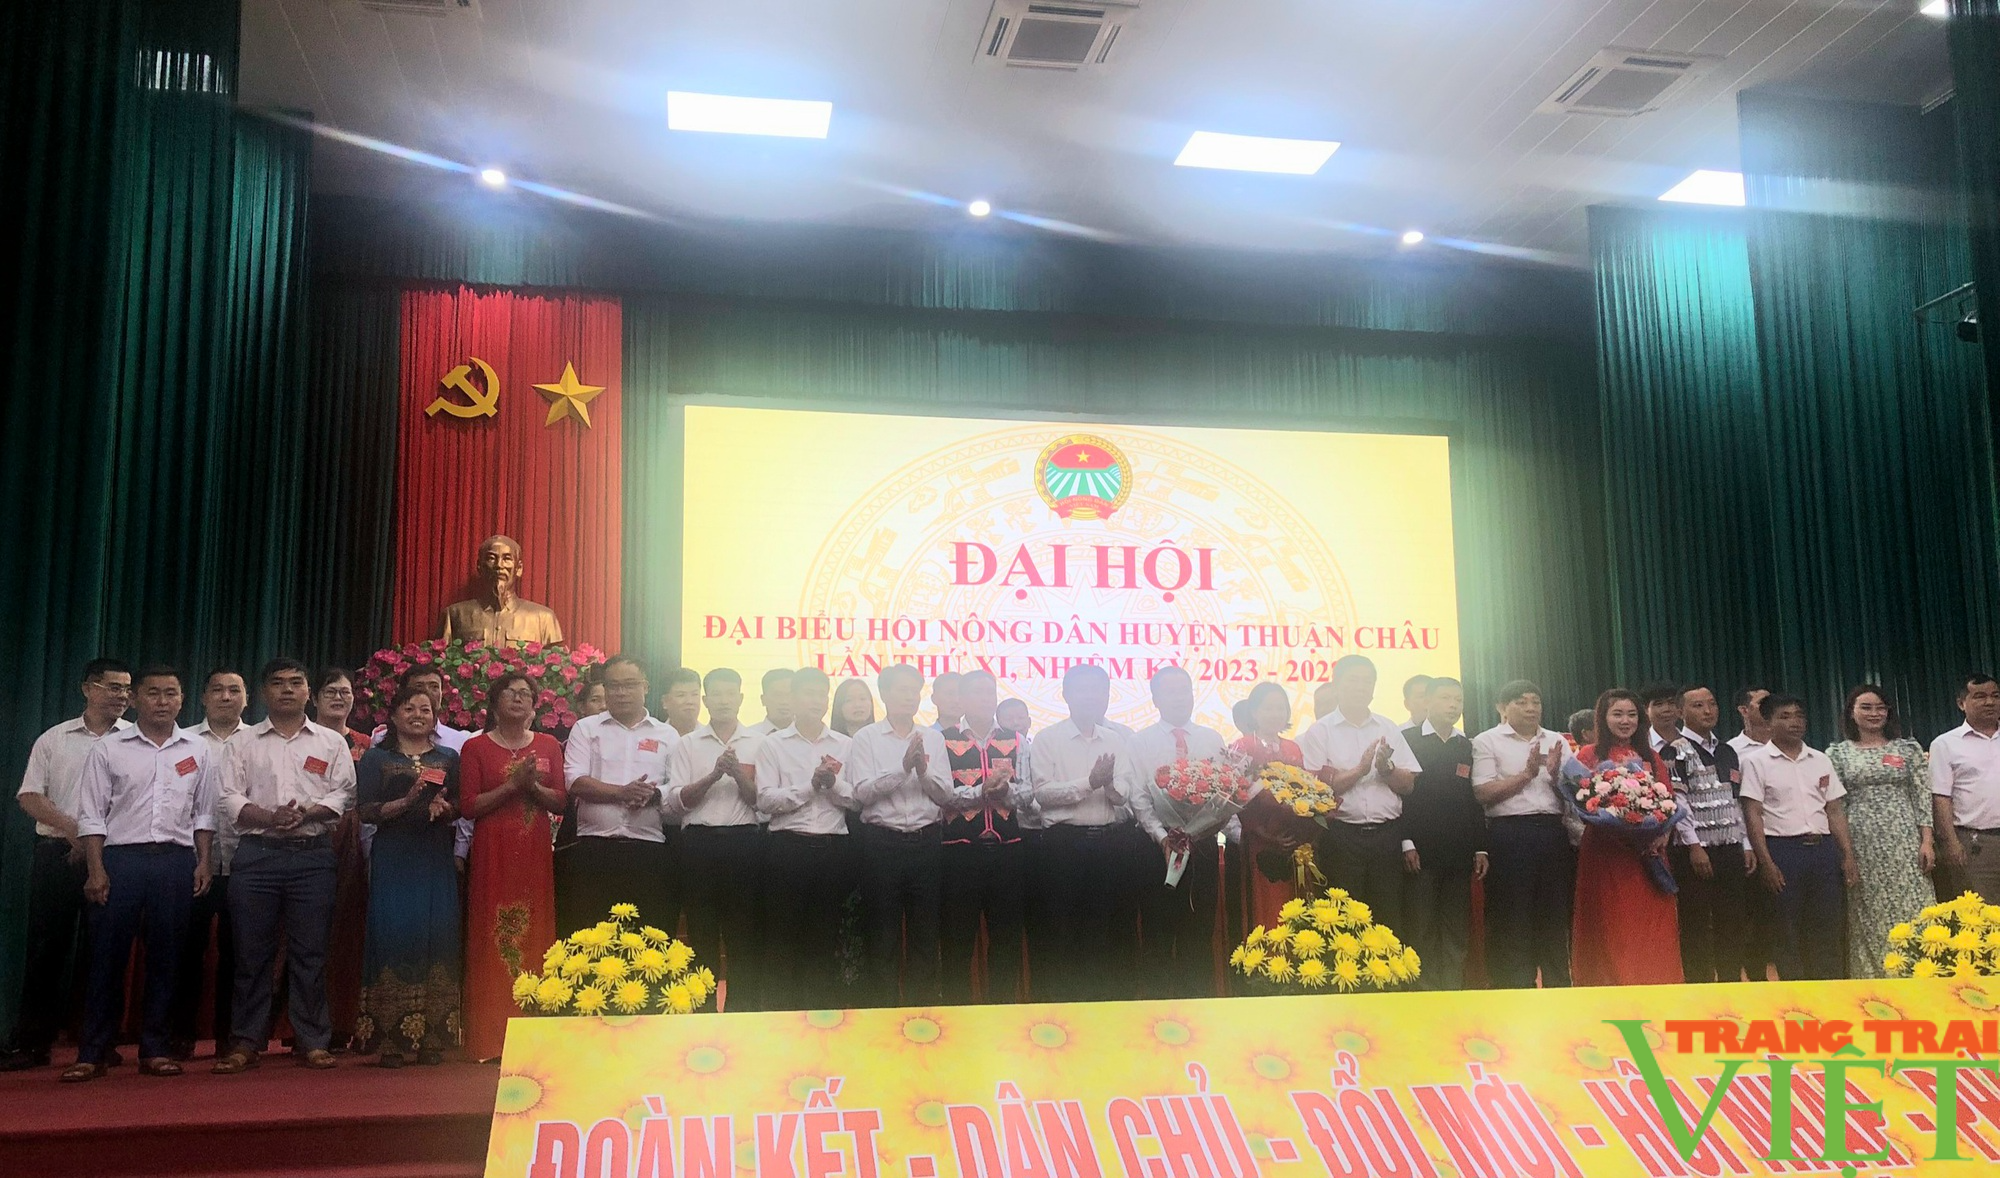 Bà Nguyễn Thúy Ngọc tái đắc cử Chủ tịch Hội Nông dân huyện Thuận Châu, tỉnh Sơn La - Ảnh 5.